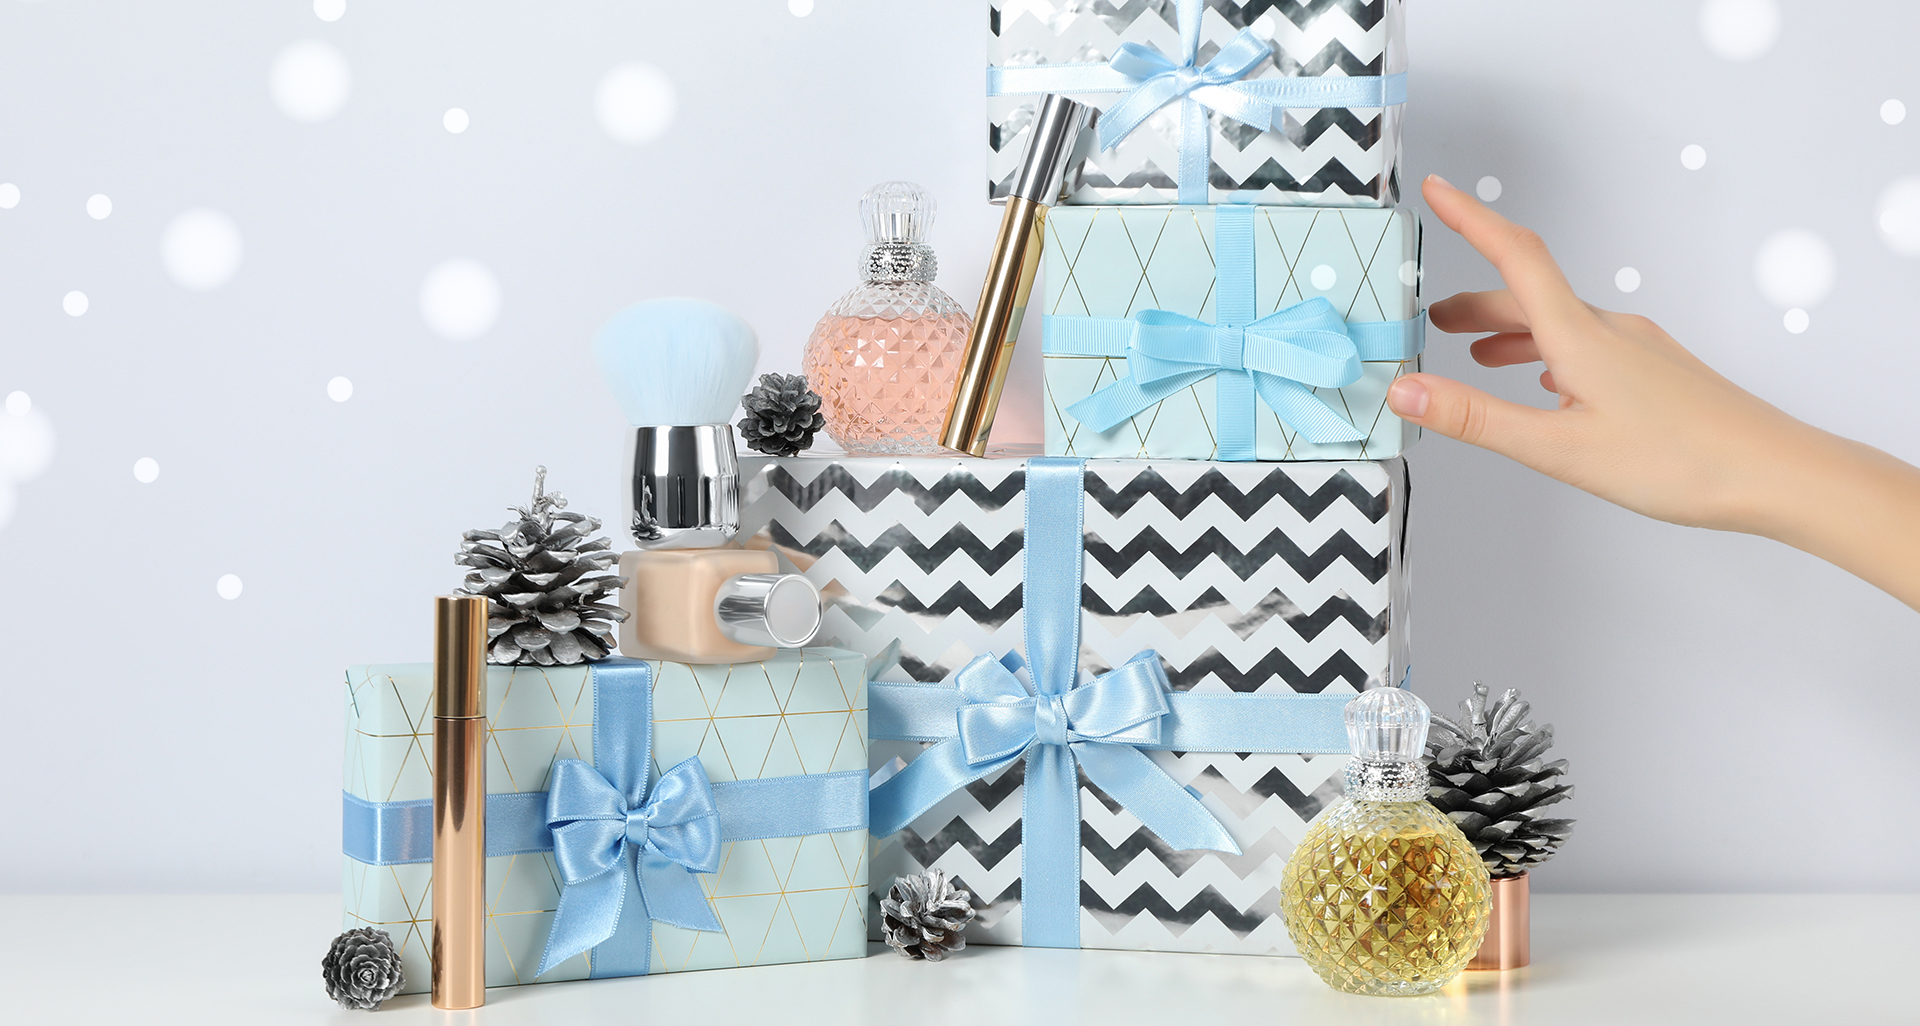 Kosmetyki na prezent dla bliskich – radzimy, jak sprawić radość rodzinie i znajomym